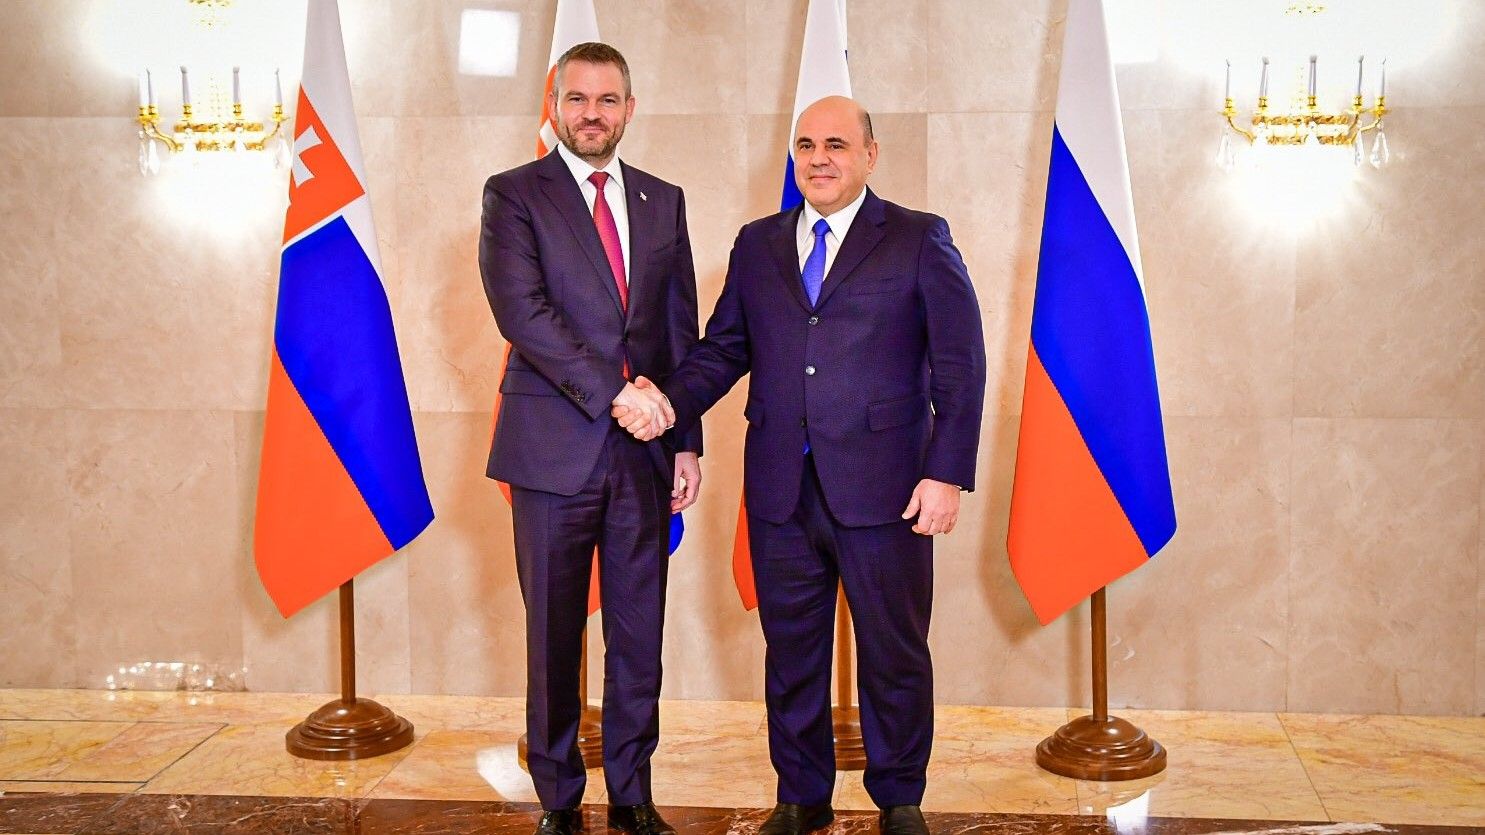 Eslovaquia tiene un nuevo presidente.  ¿Malas noticias para Ucrania? [KOMENTARZ]